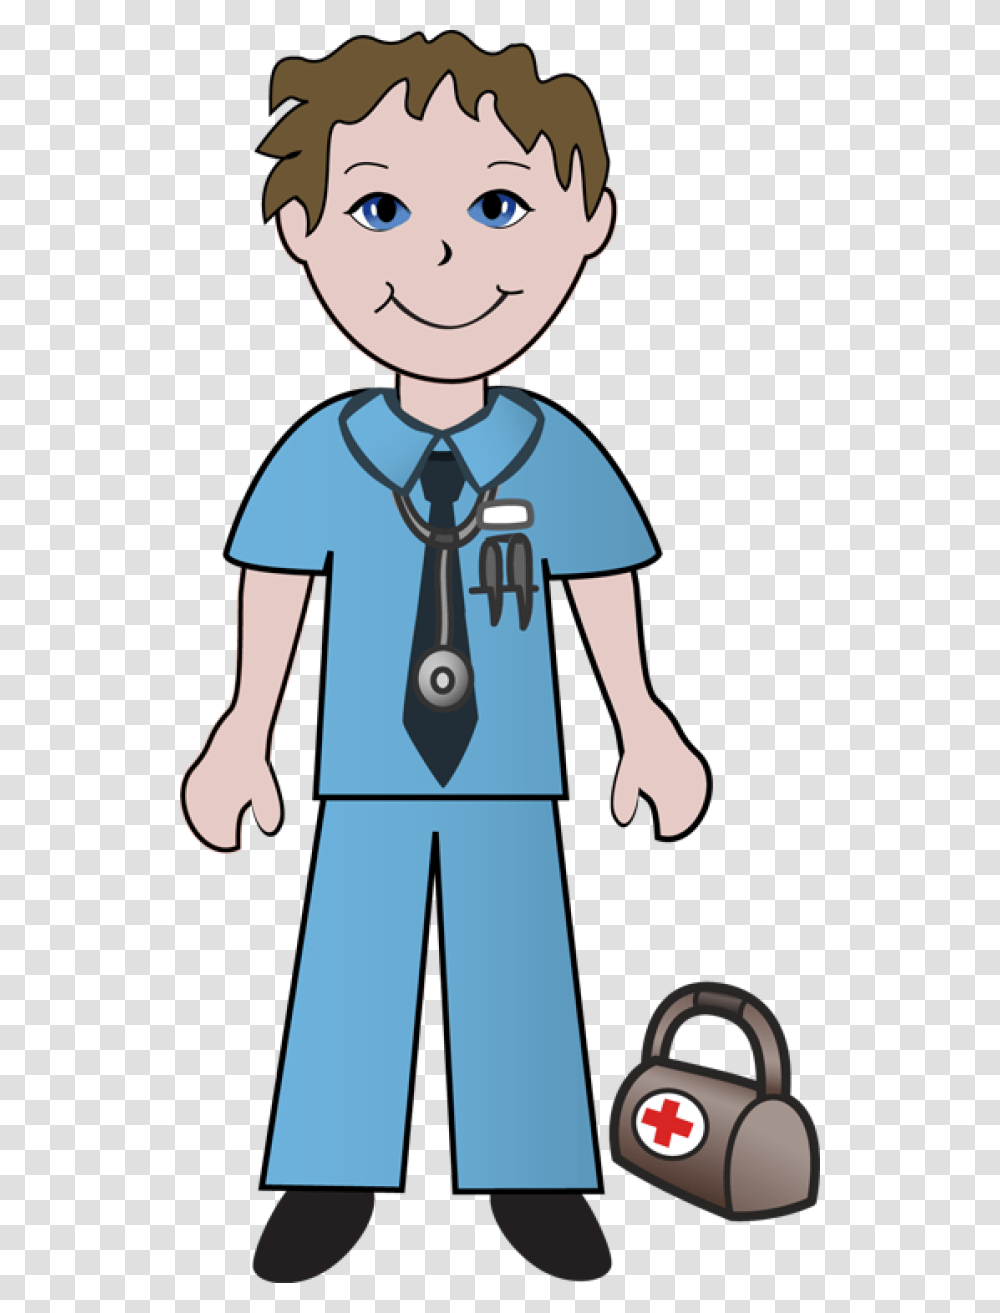 Free Clip Art Of Doctors And Nurses Doctor Clip Art Etc, Person, Human, Cat, Pet Transparent Png